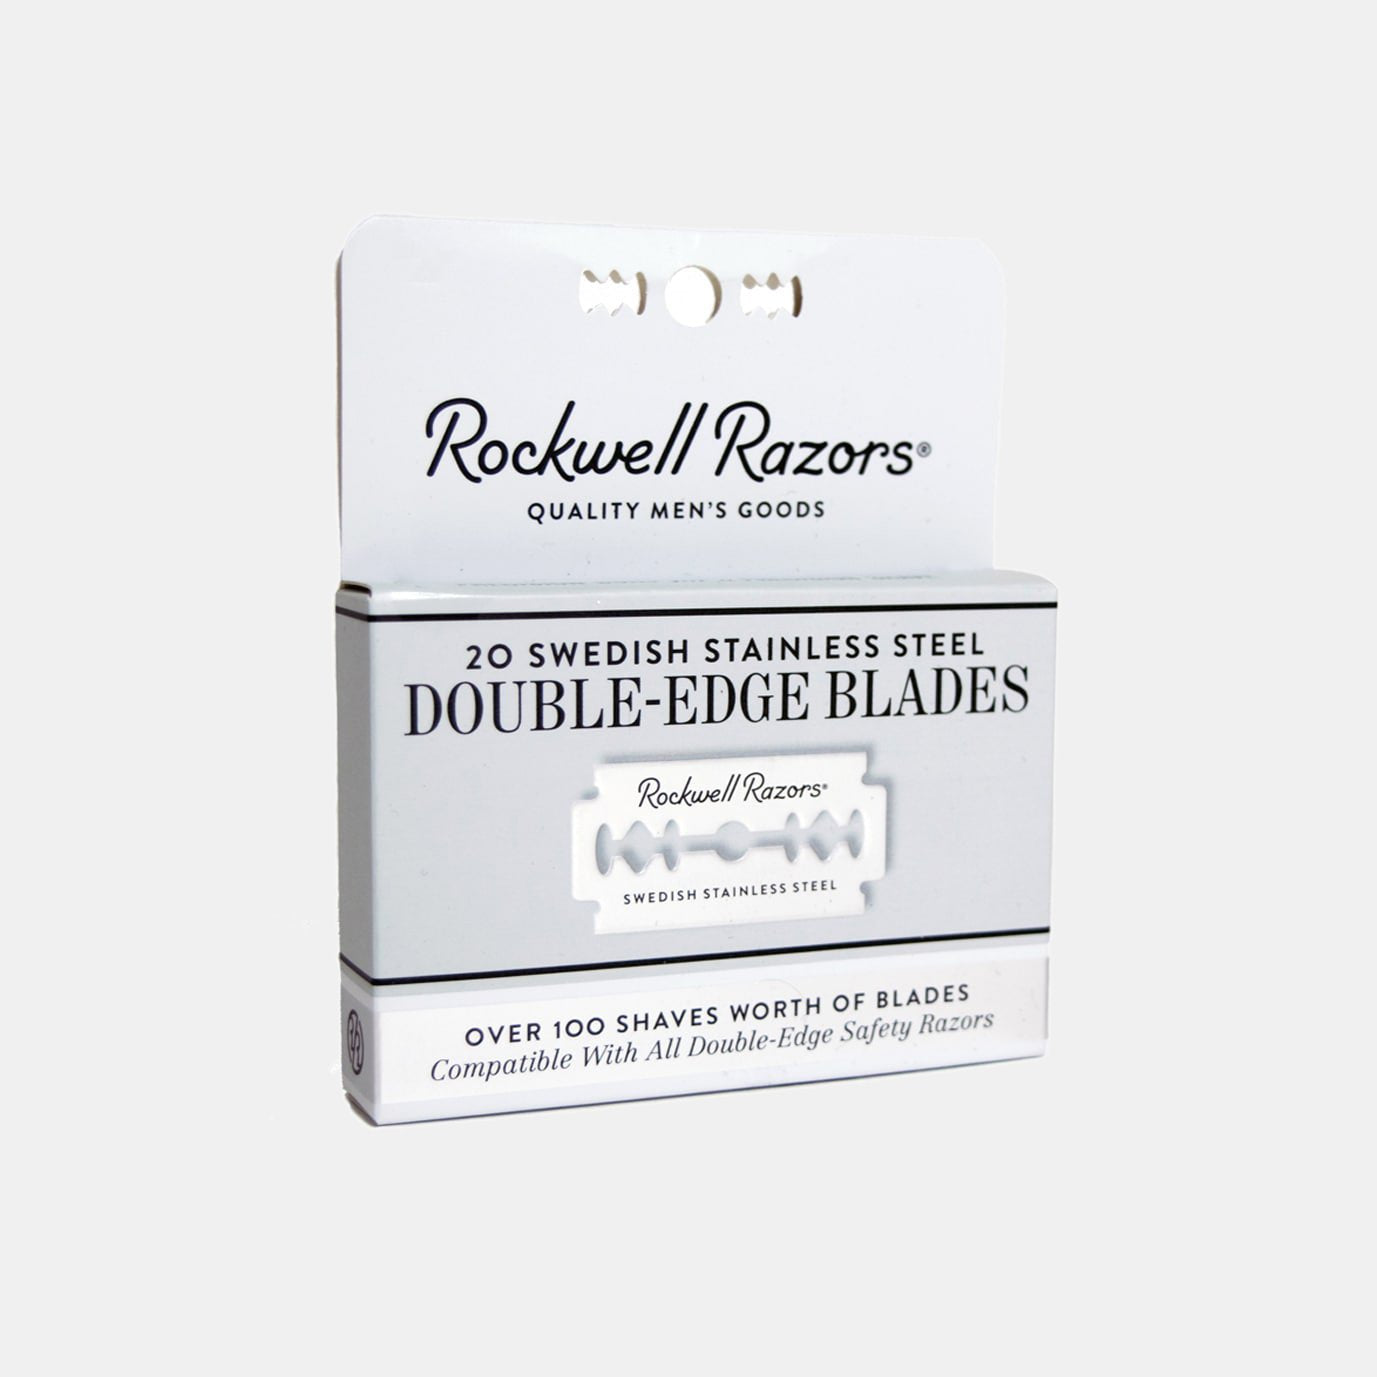 Rockwell Razors - 20 Double-Edge Blades